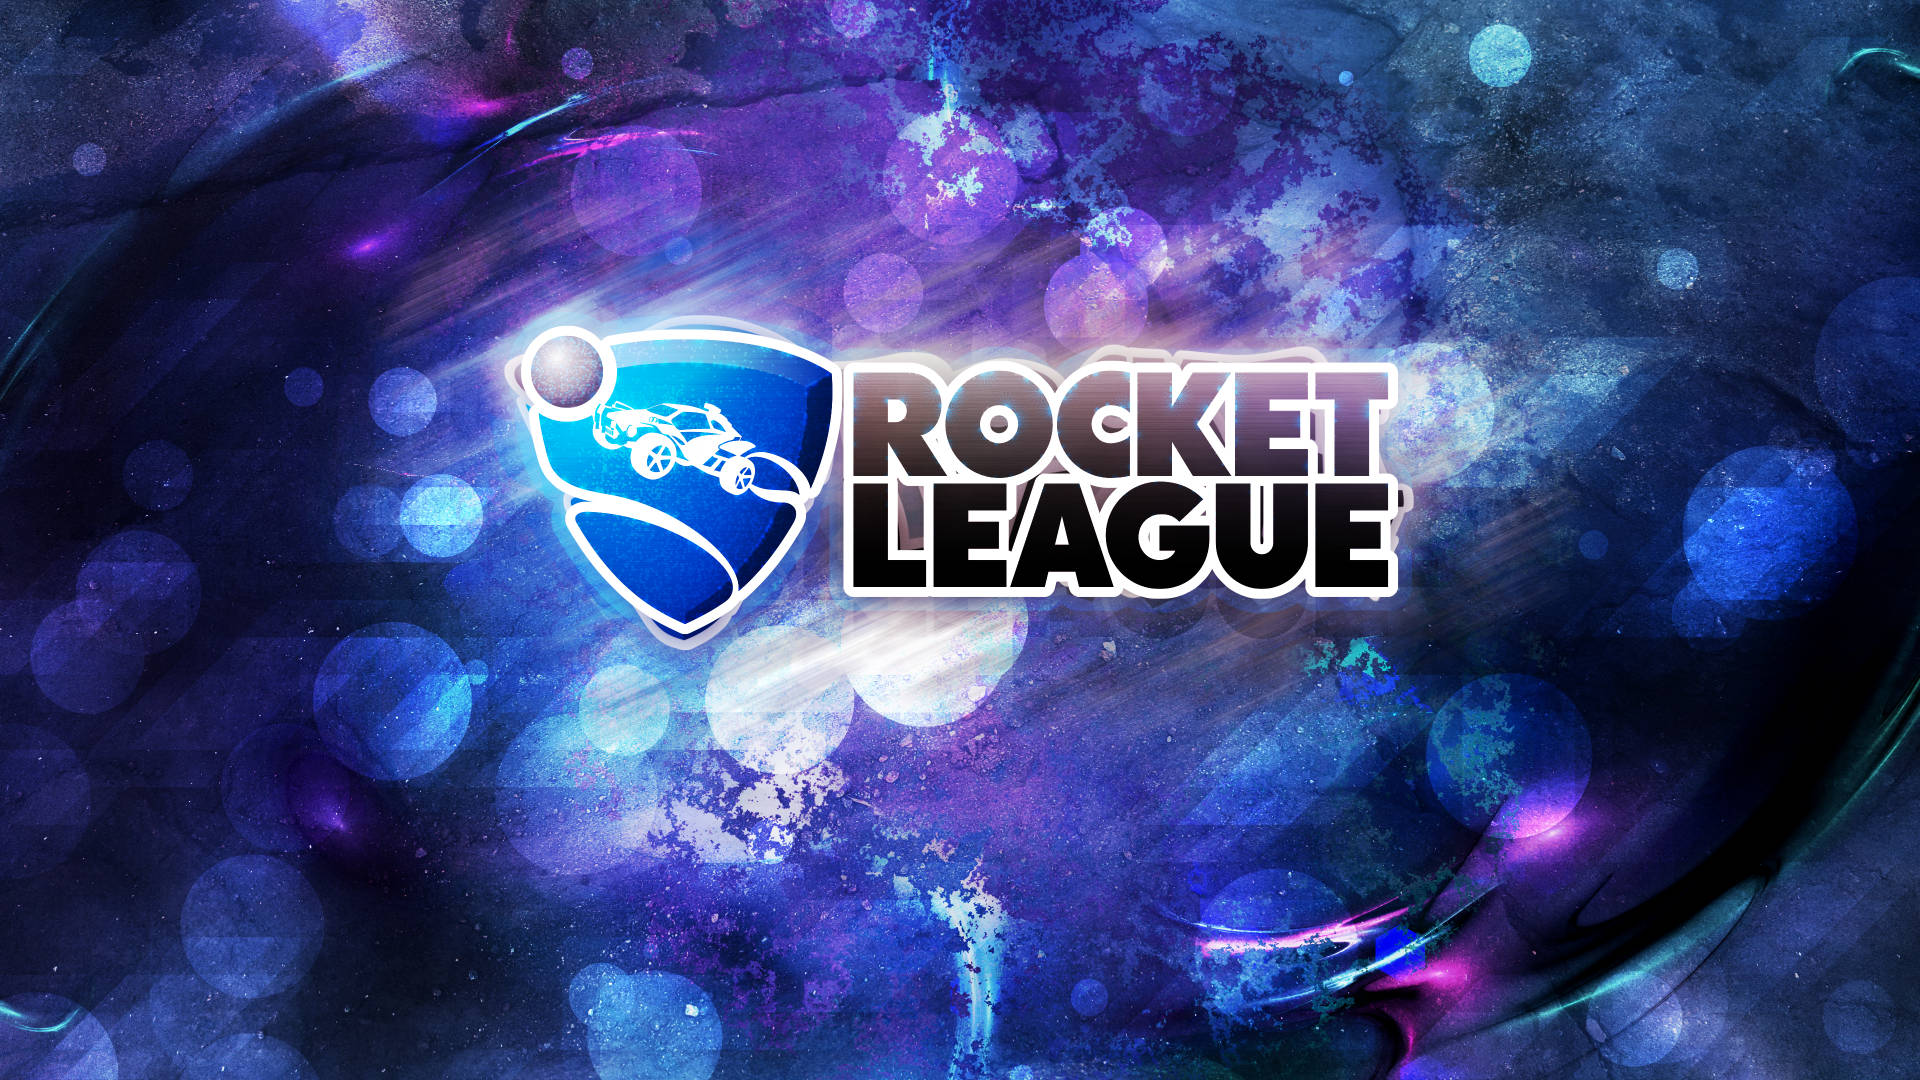 Rocket League Sticker 1920x1080